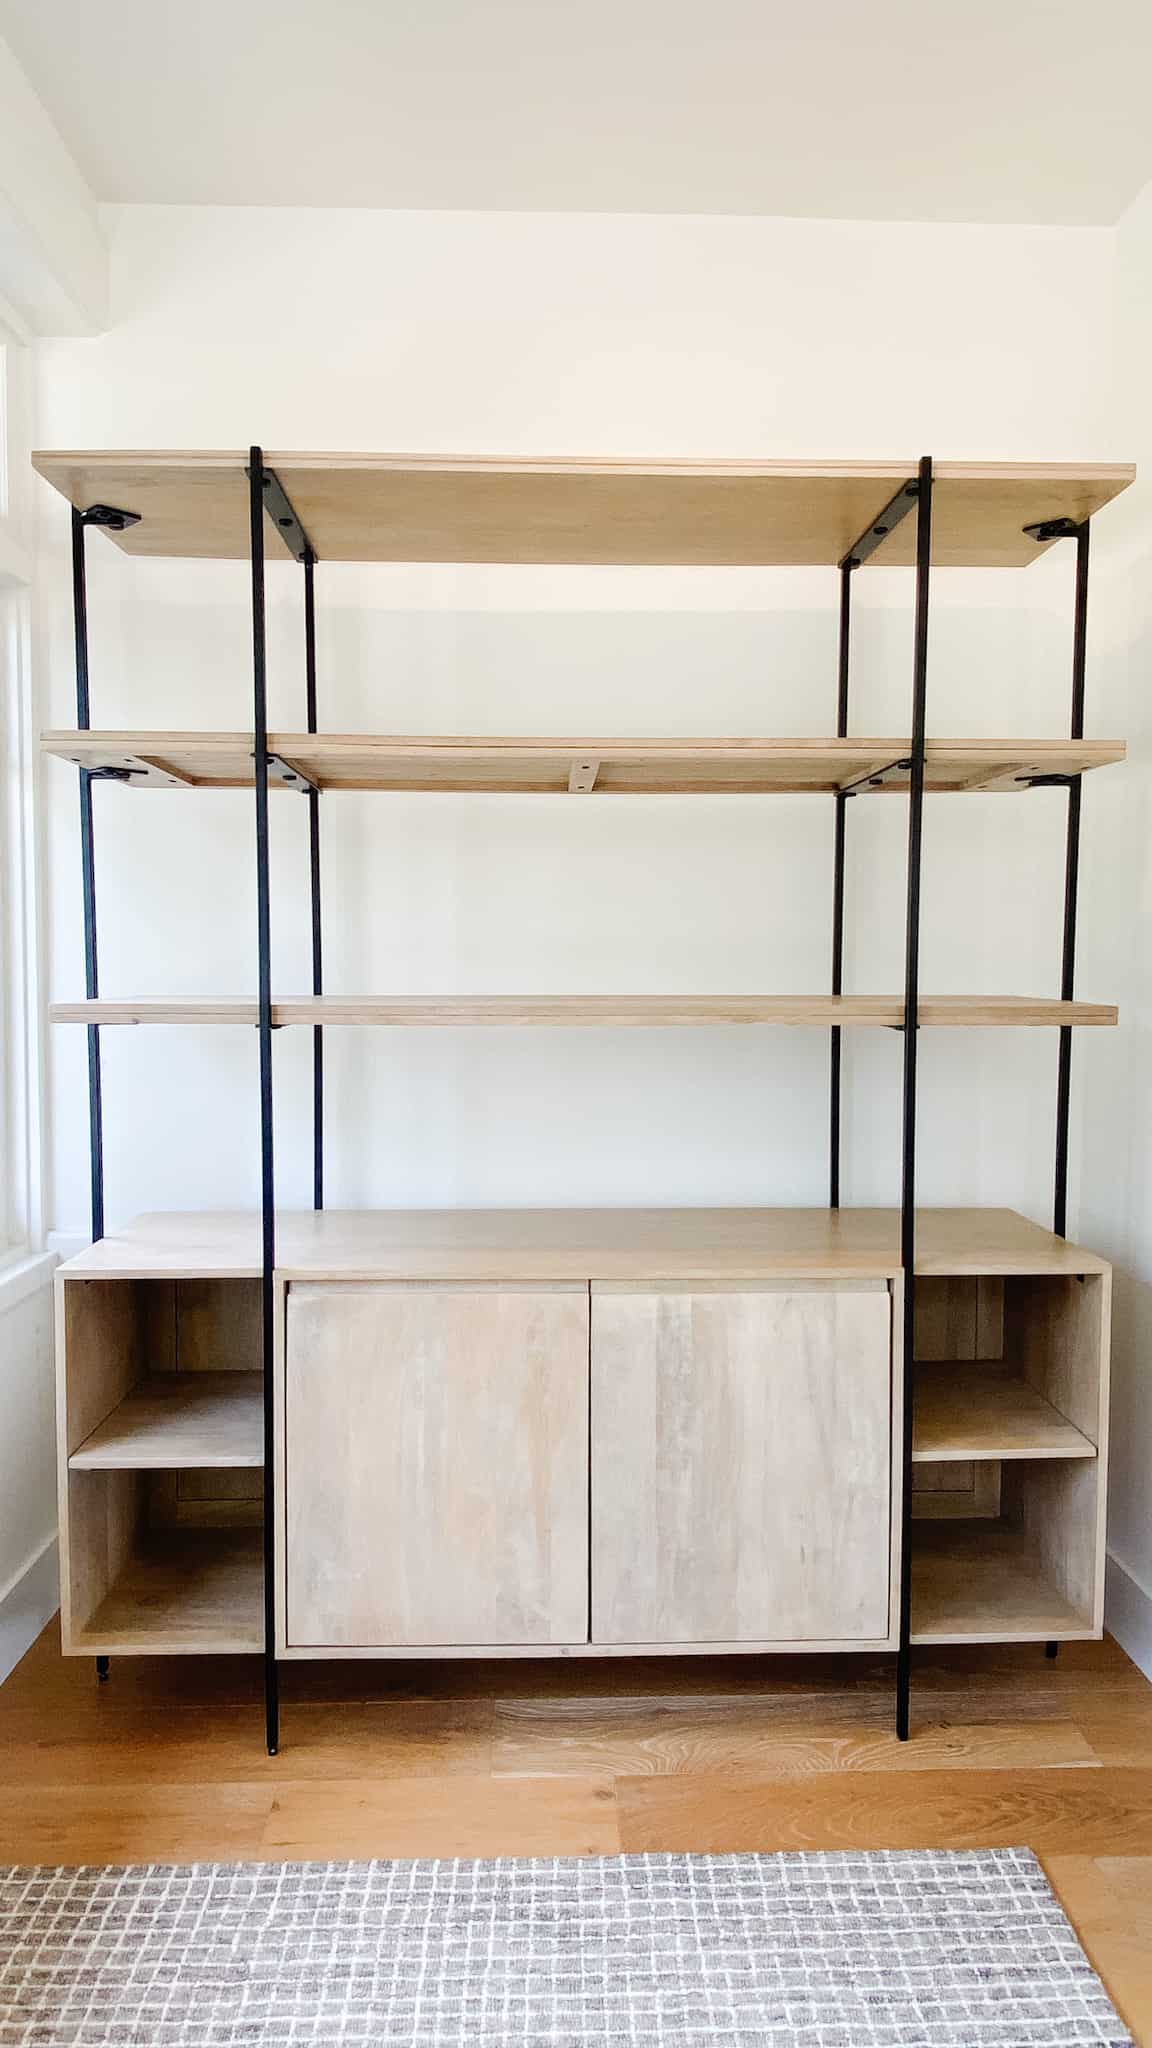 A bare bookshelf